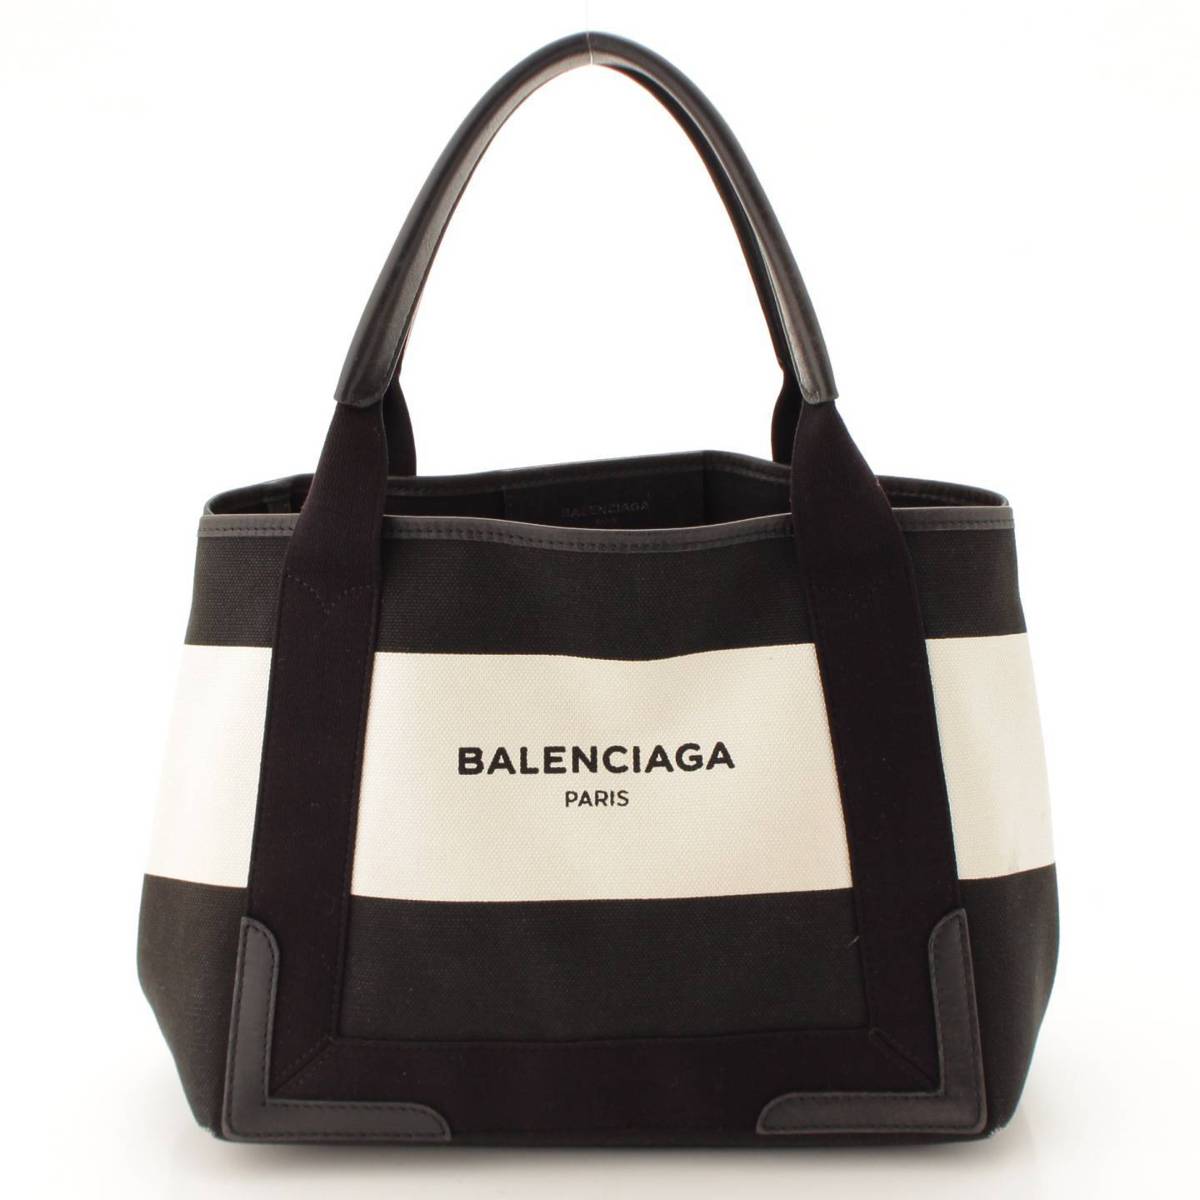 バレンシアガ(Balenciaga) ネイビーカバス S キャンバス ボーダー トートバッグ 339933 ブラック×ホワイト